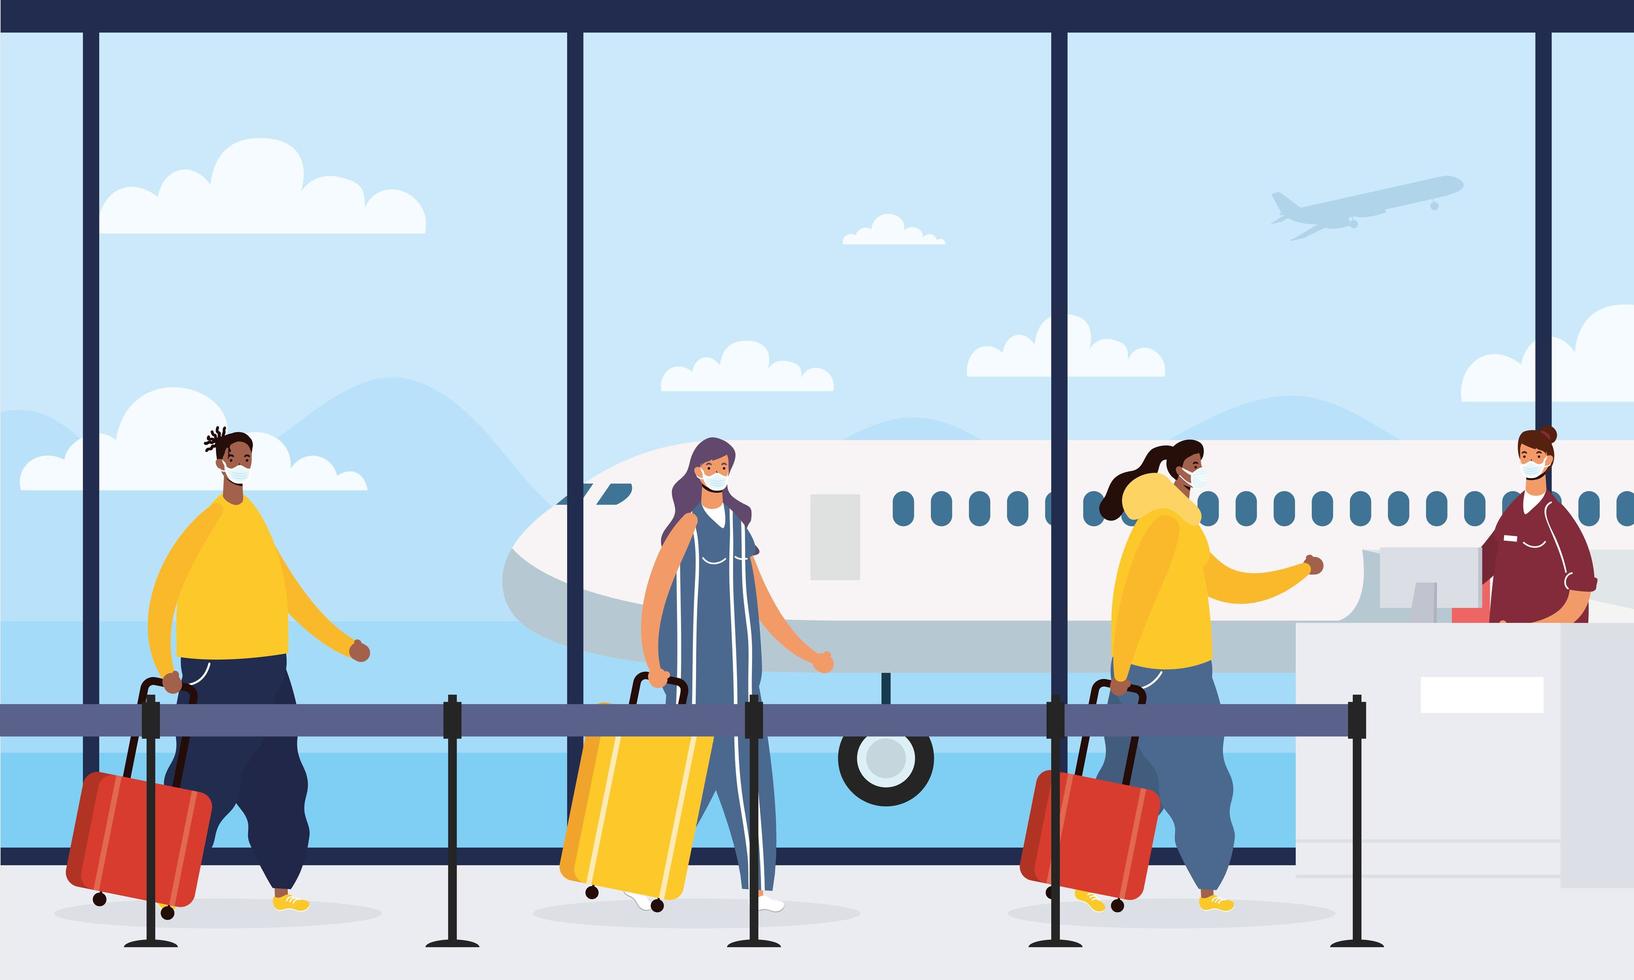 viajantes esperando no aeroporto para pegar um voo vetor